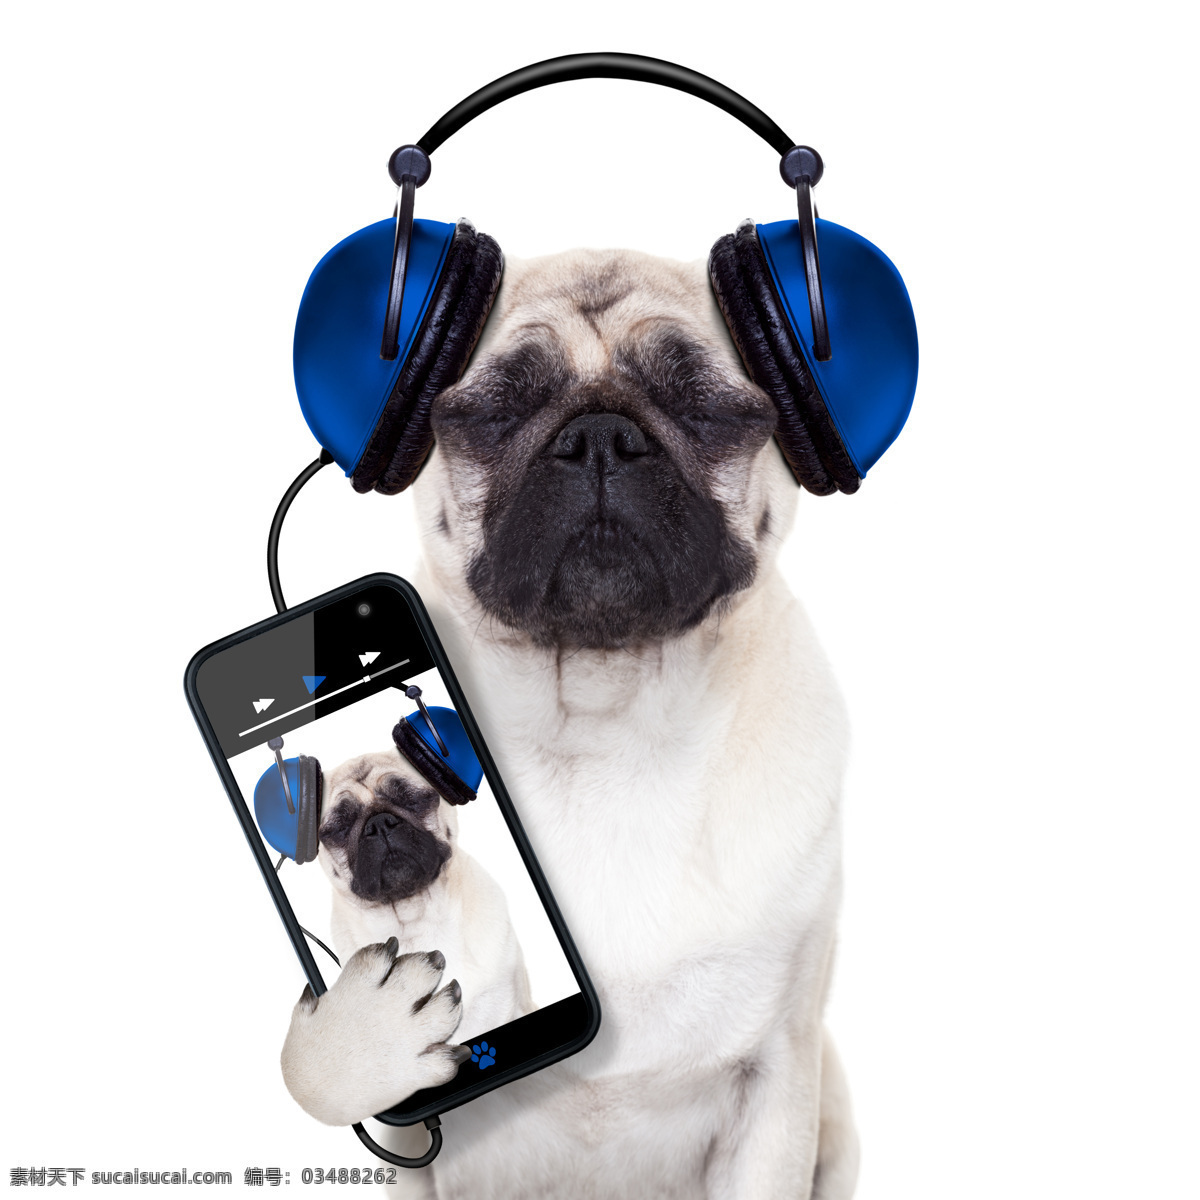 手机 听歌 小狗 狗狗 可爱小狗 动物世界 宠物狗 陆地动物 生物世界 狗狗图片